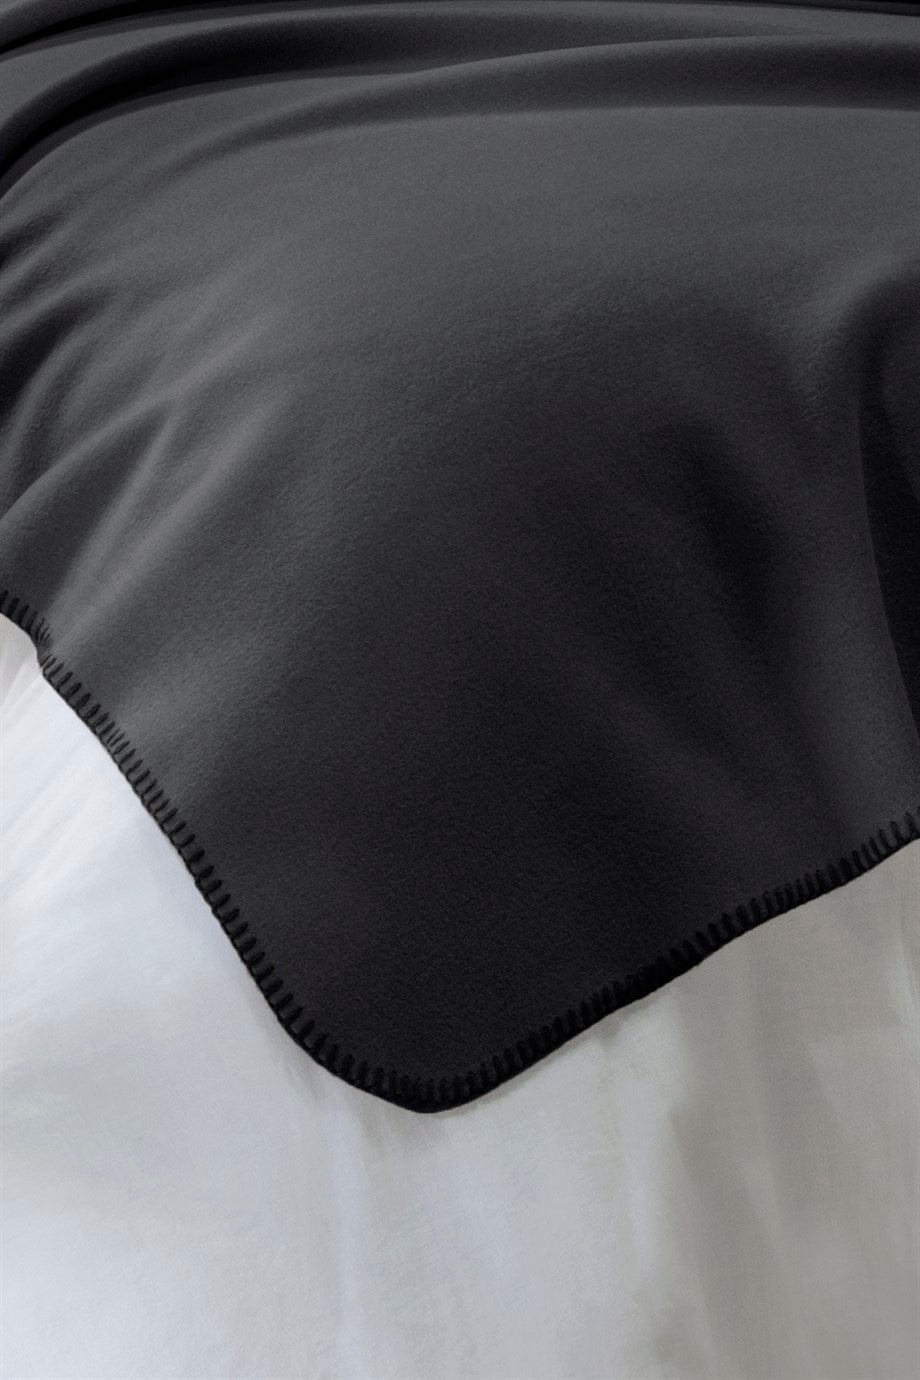 DENIZLI CONCEPT Bloom Fleece Blanket Black